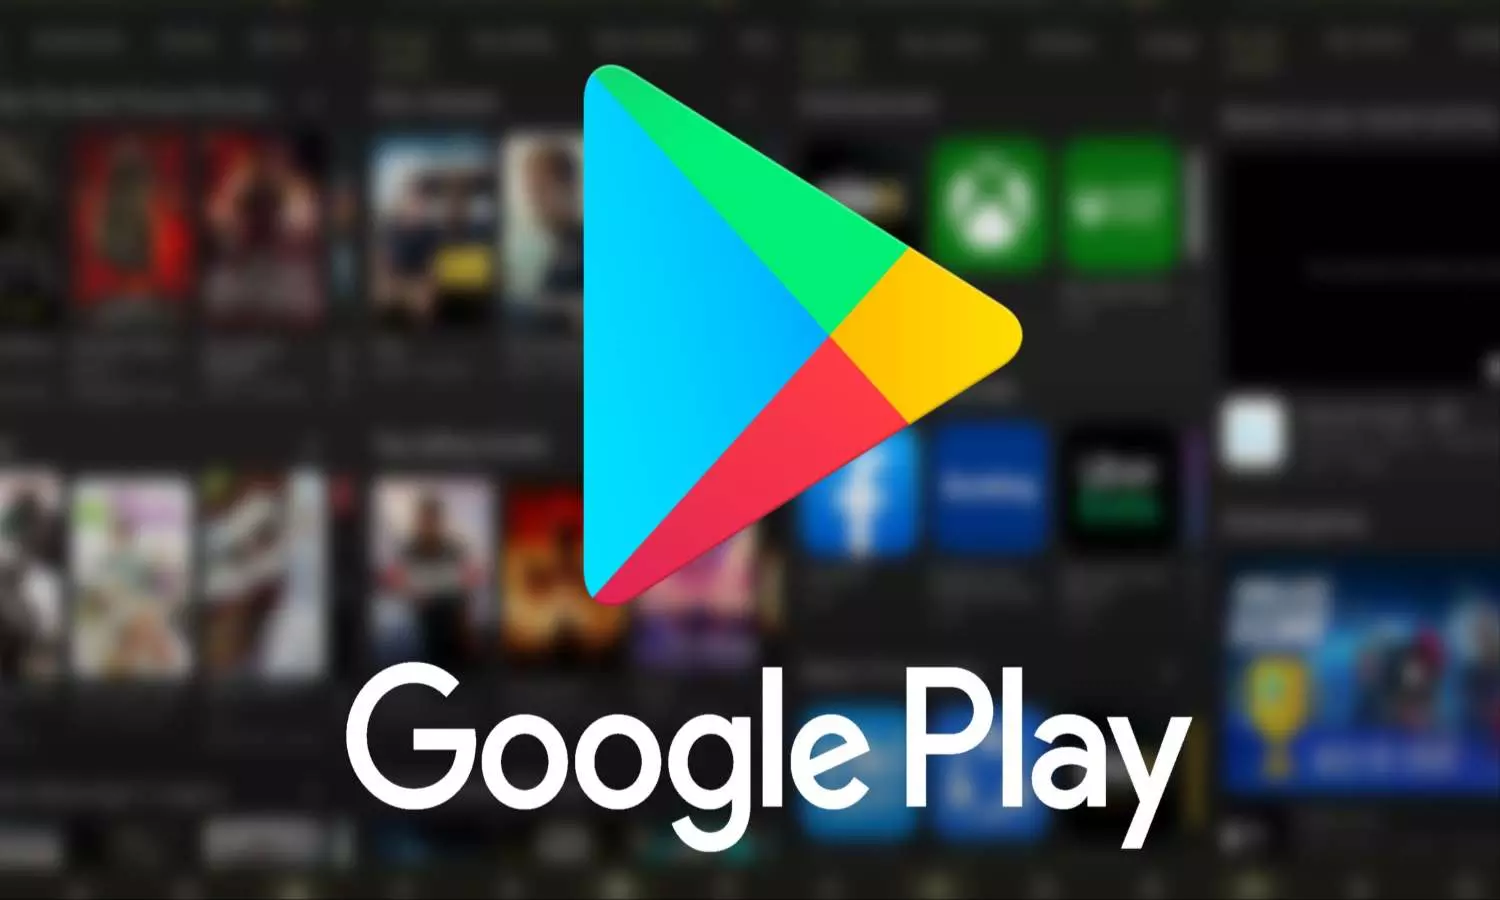 Google Play यूजर्स के लिए अच्छी खबर, पहली बार मिलने जा रहा ये खास फीचर